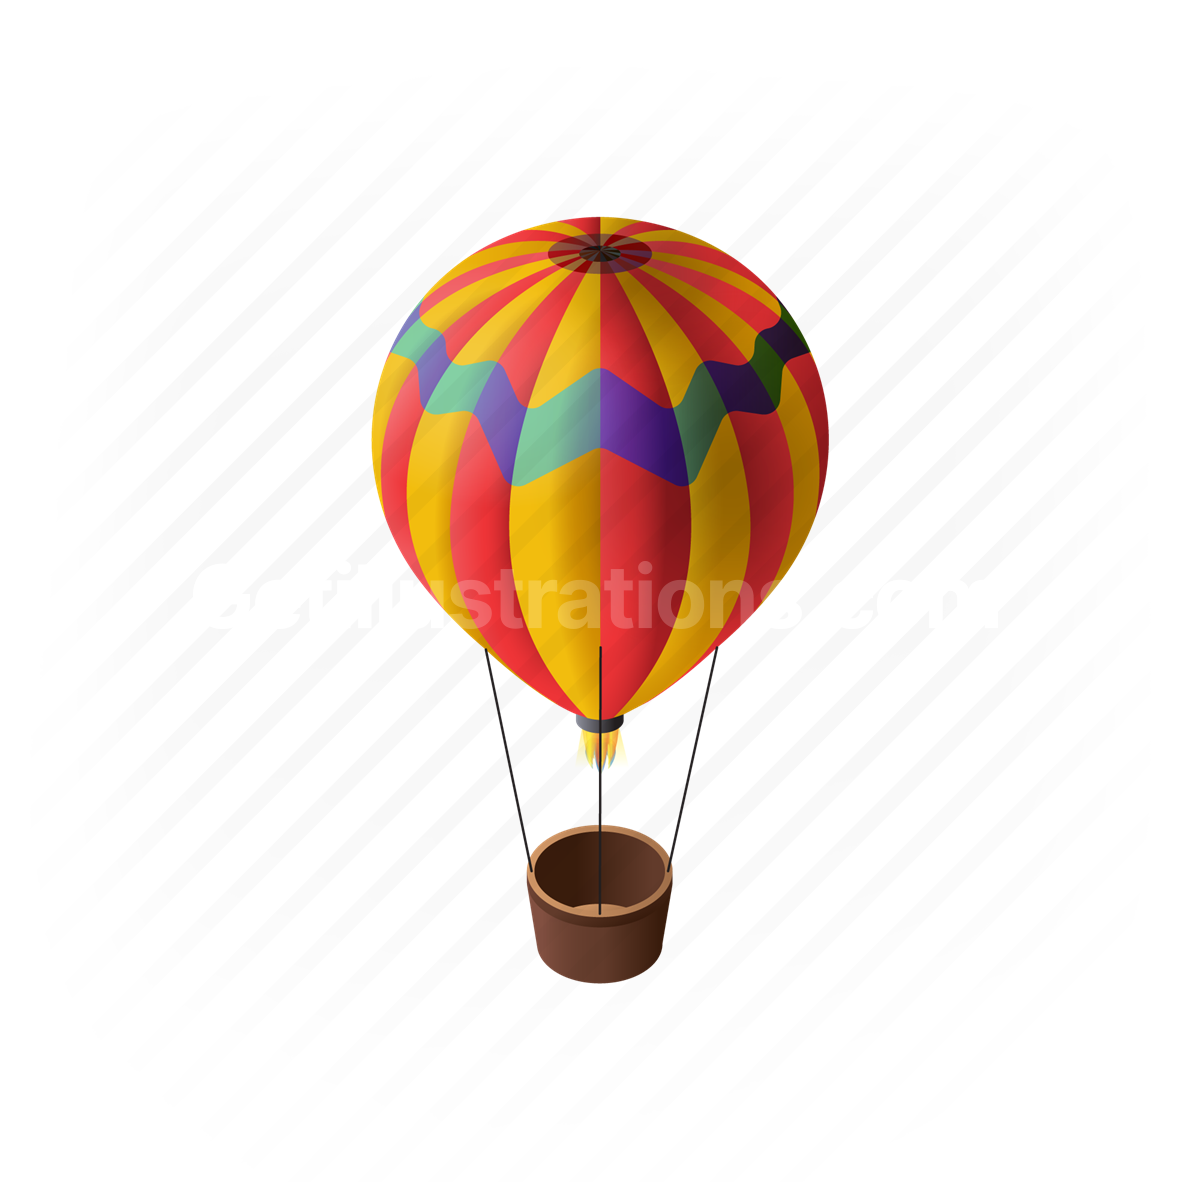 hot air balloon, balloon, transport, vehicle